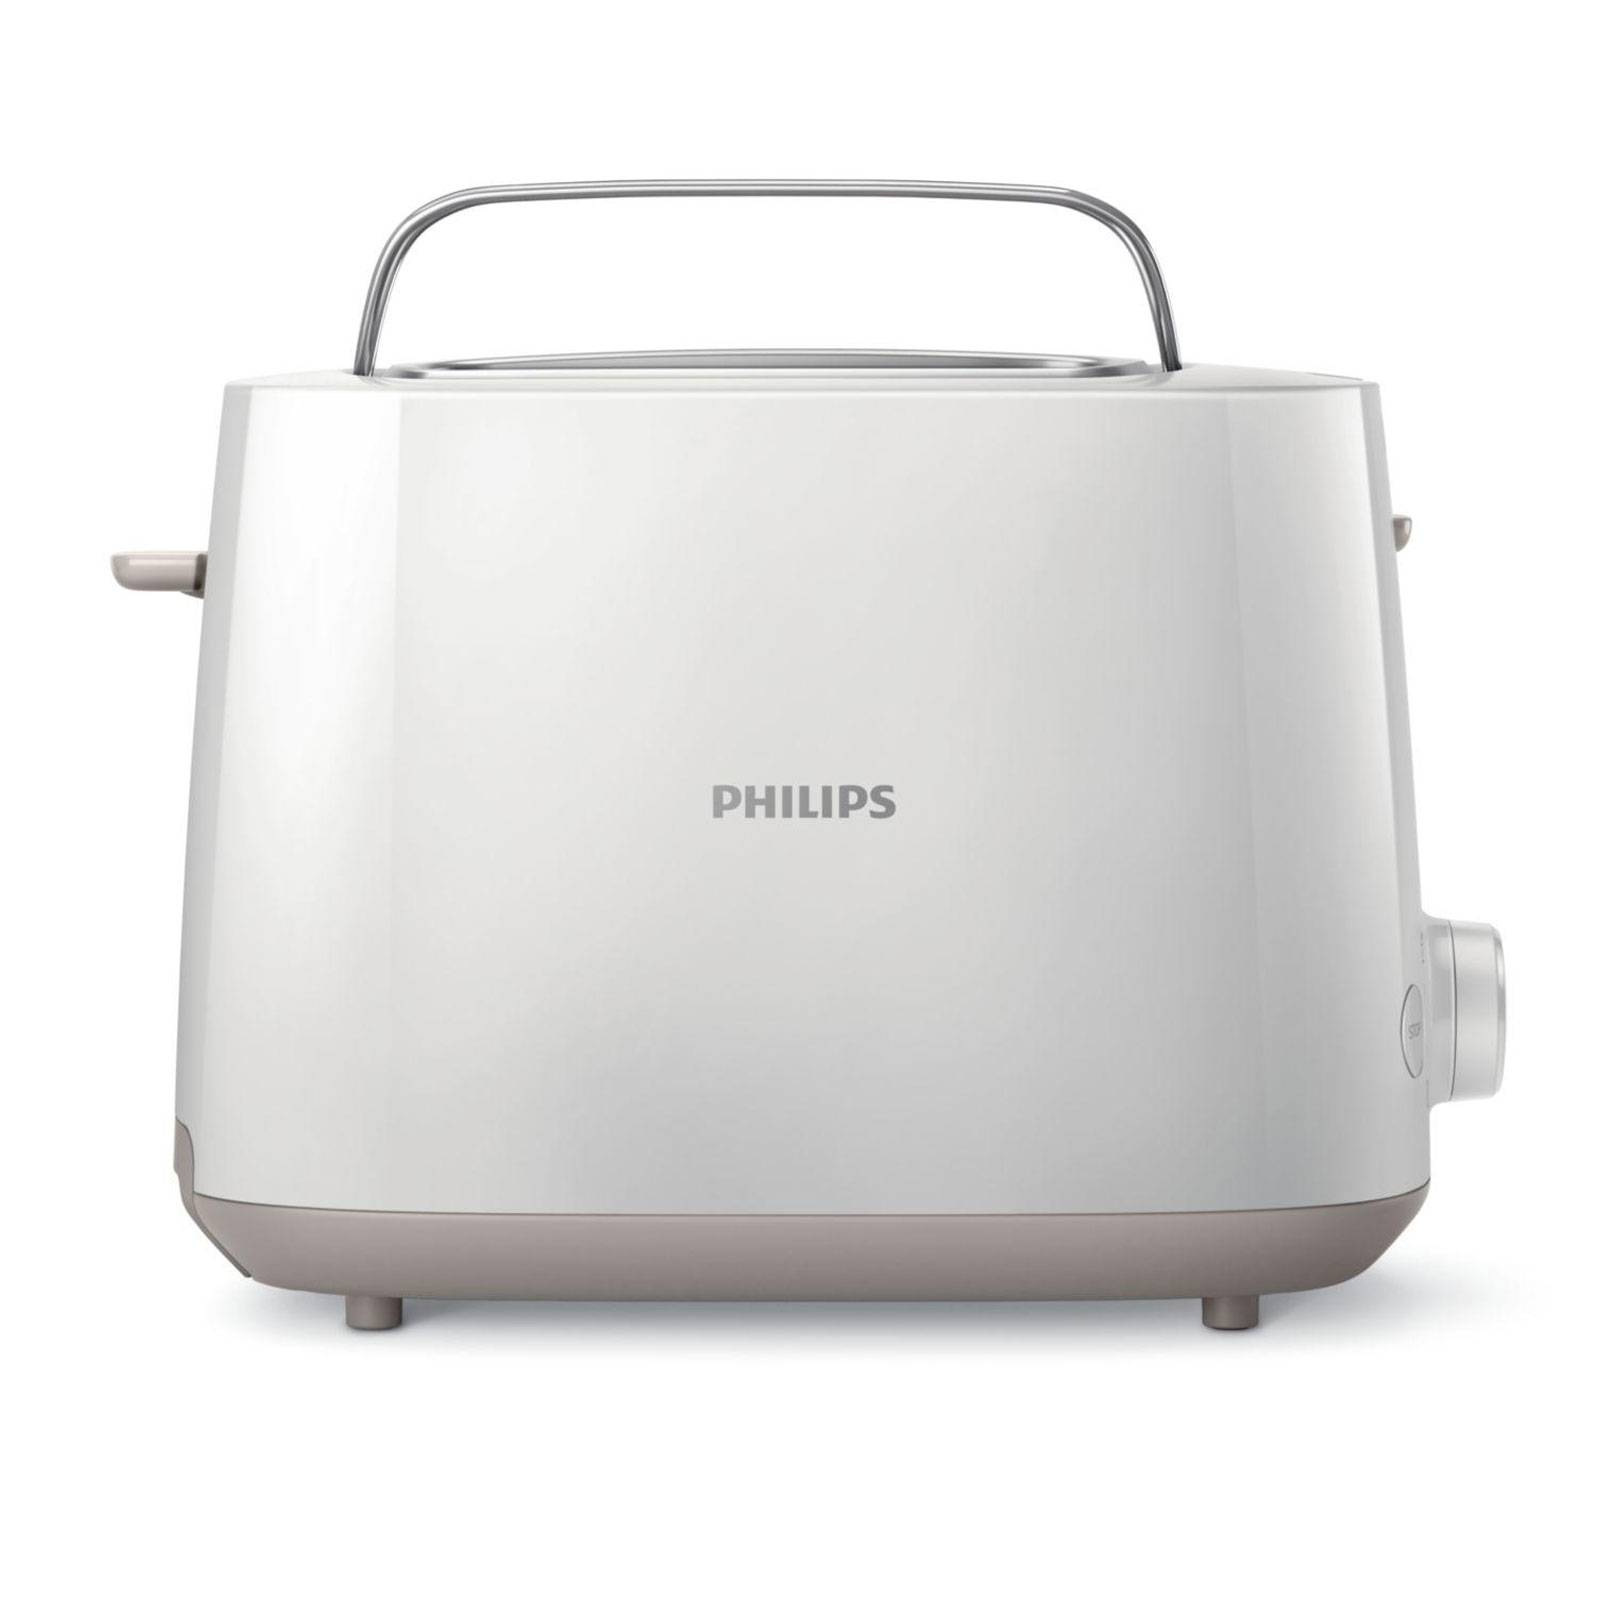 Bedste Philips Toaster i 2023